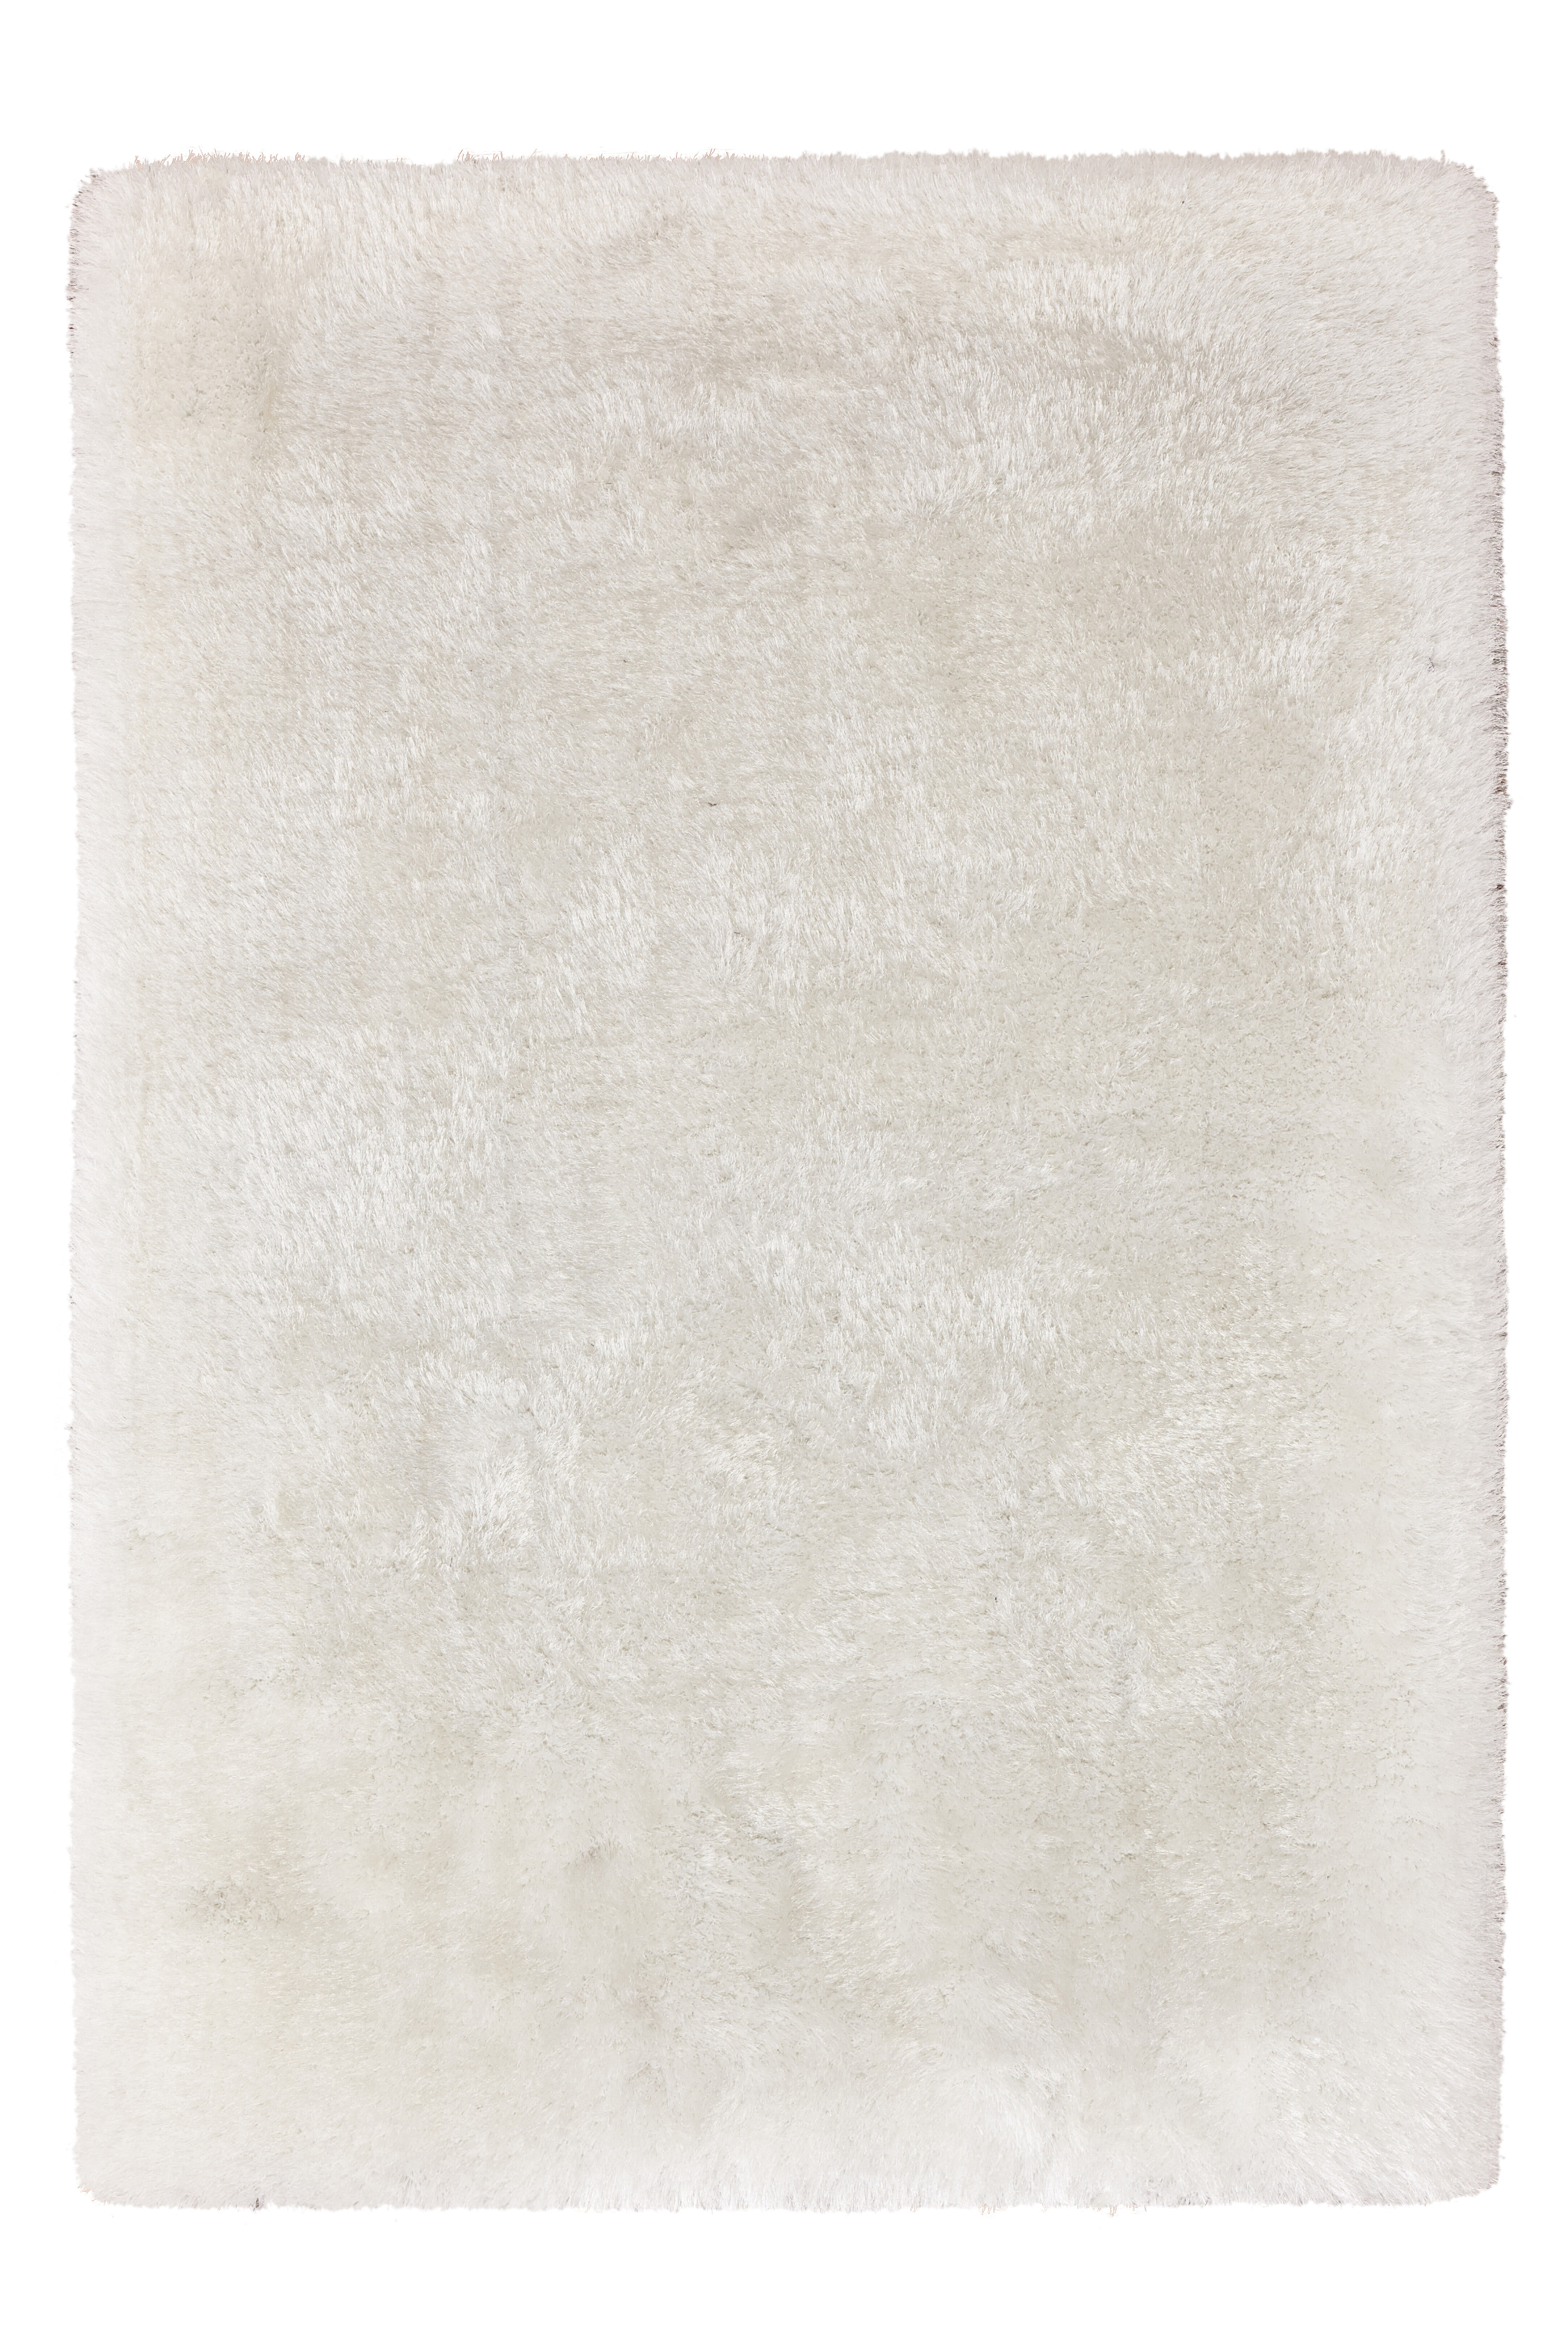 Kayoom Vloerkleed 'Cosy 310' kleur Wit, 200 x 290cm